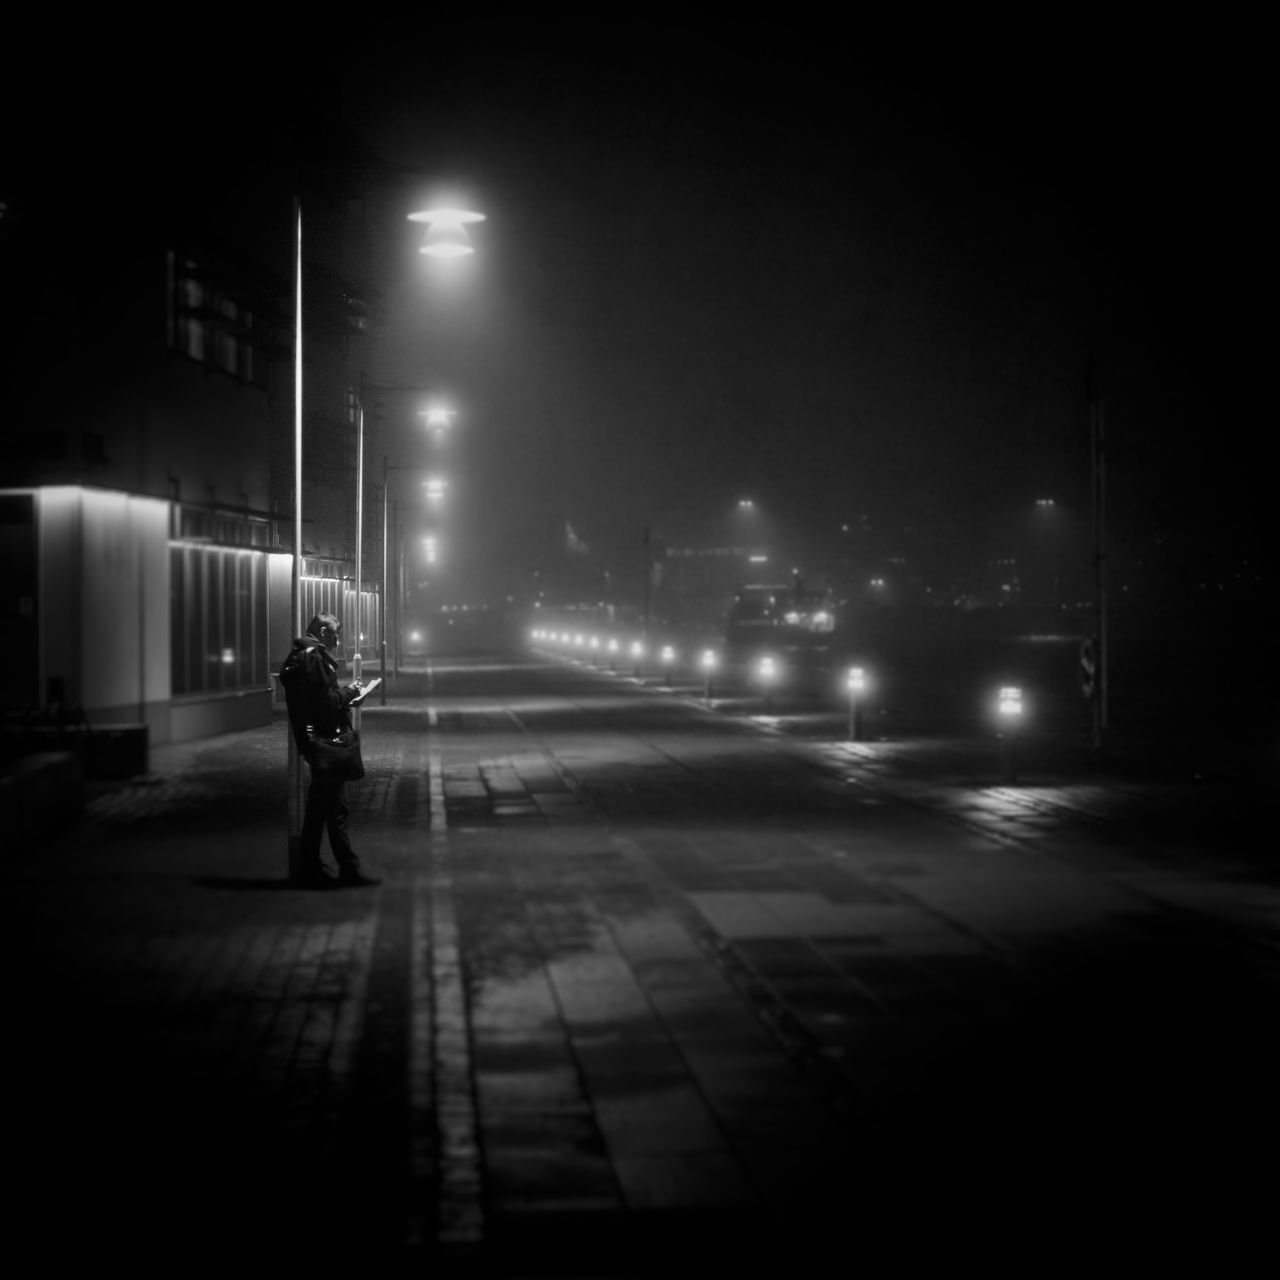 MAN WALKING ON ROAD AT NIGHT